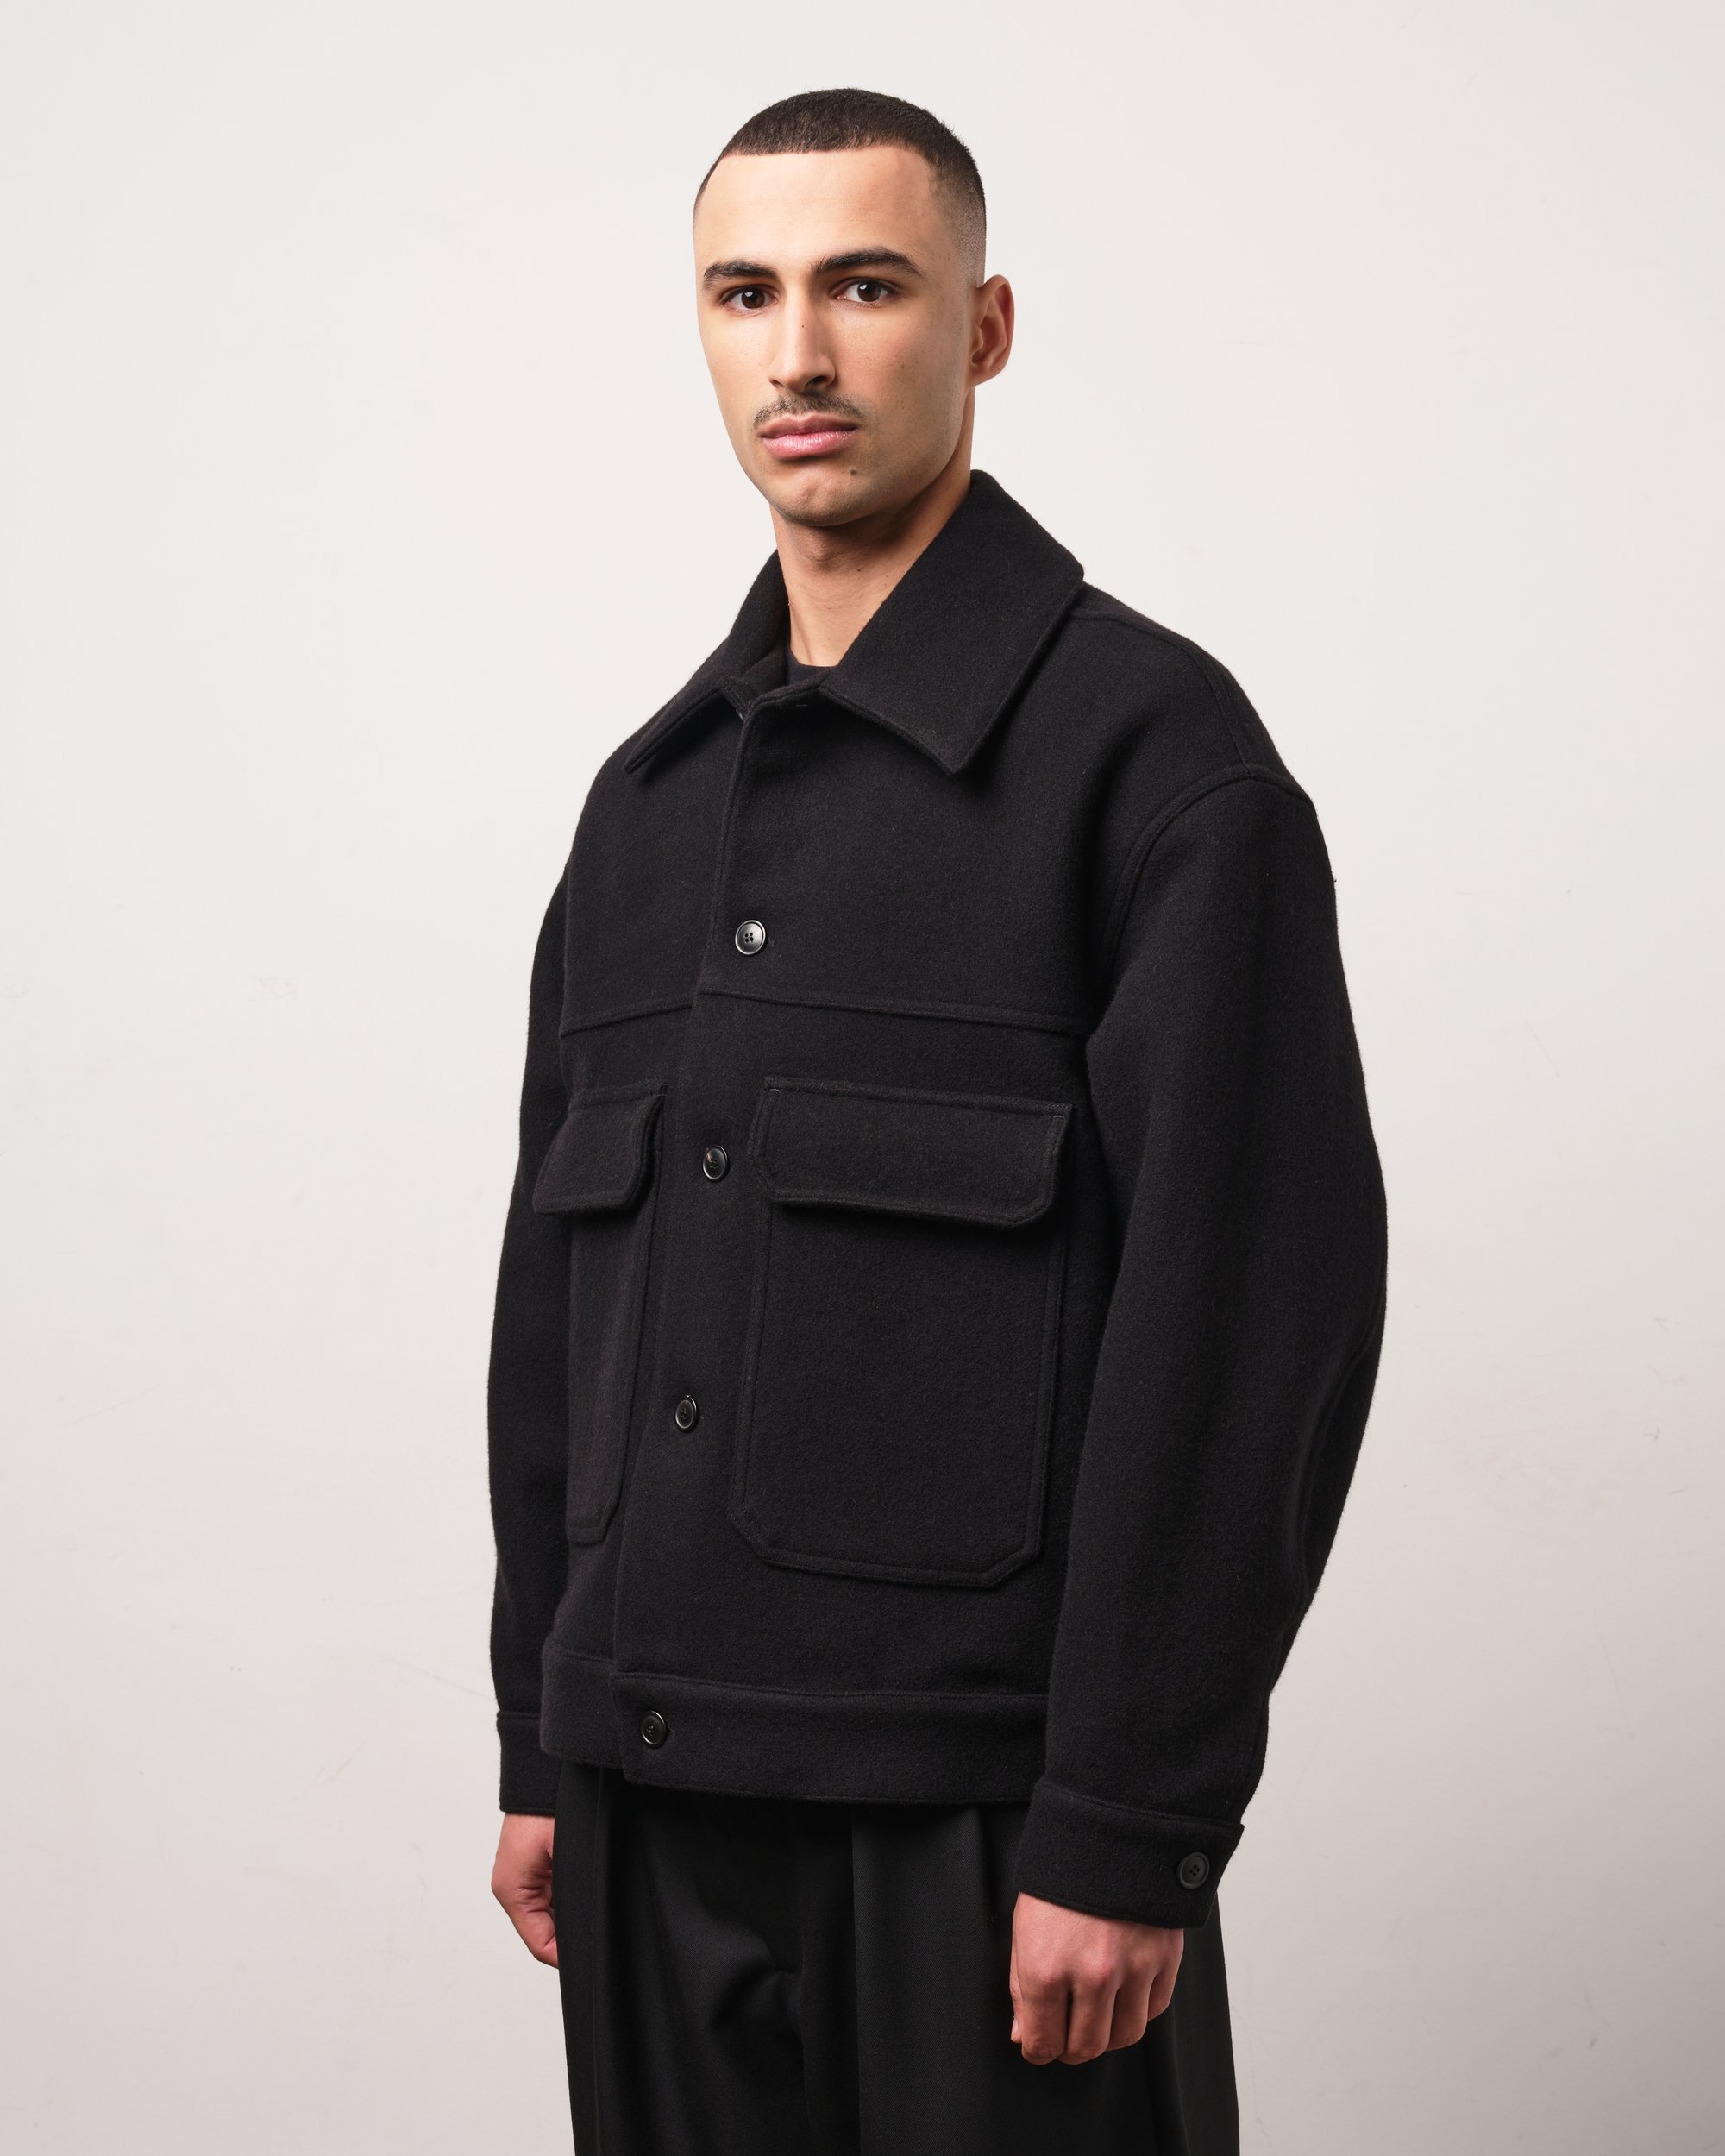 Lownn — Black Wool Cashmere Workwear Jacket